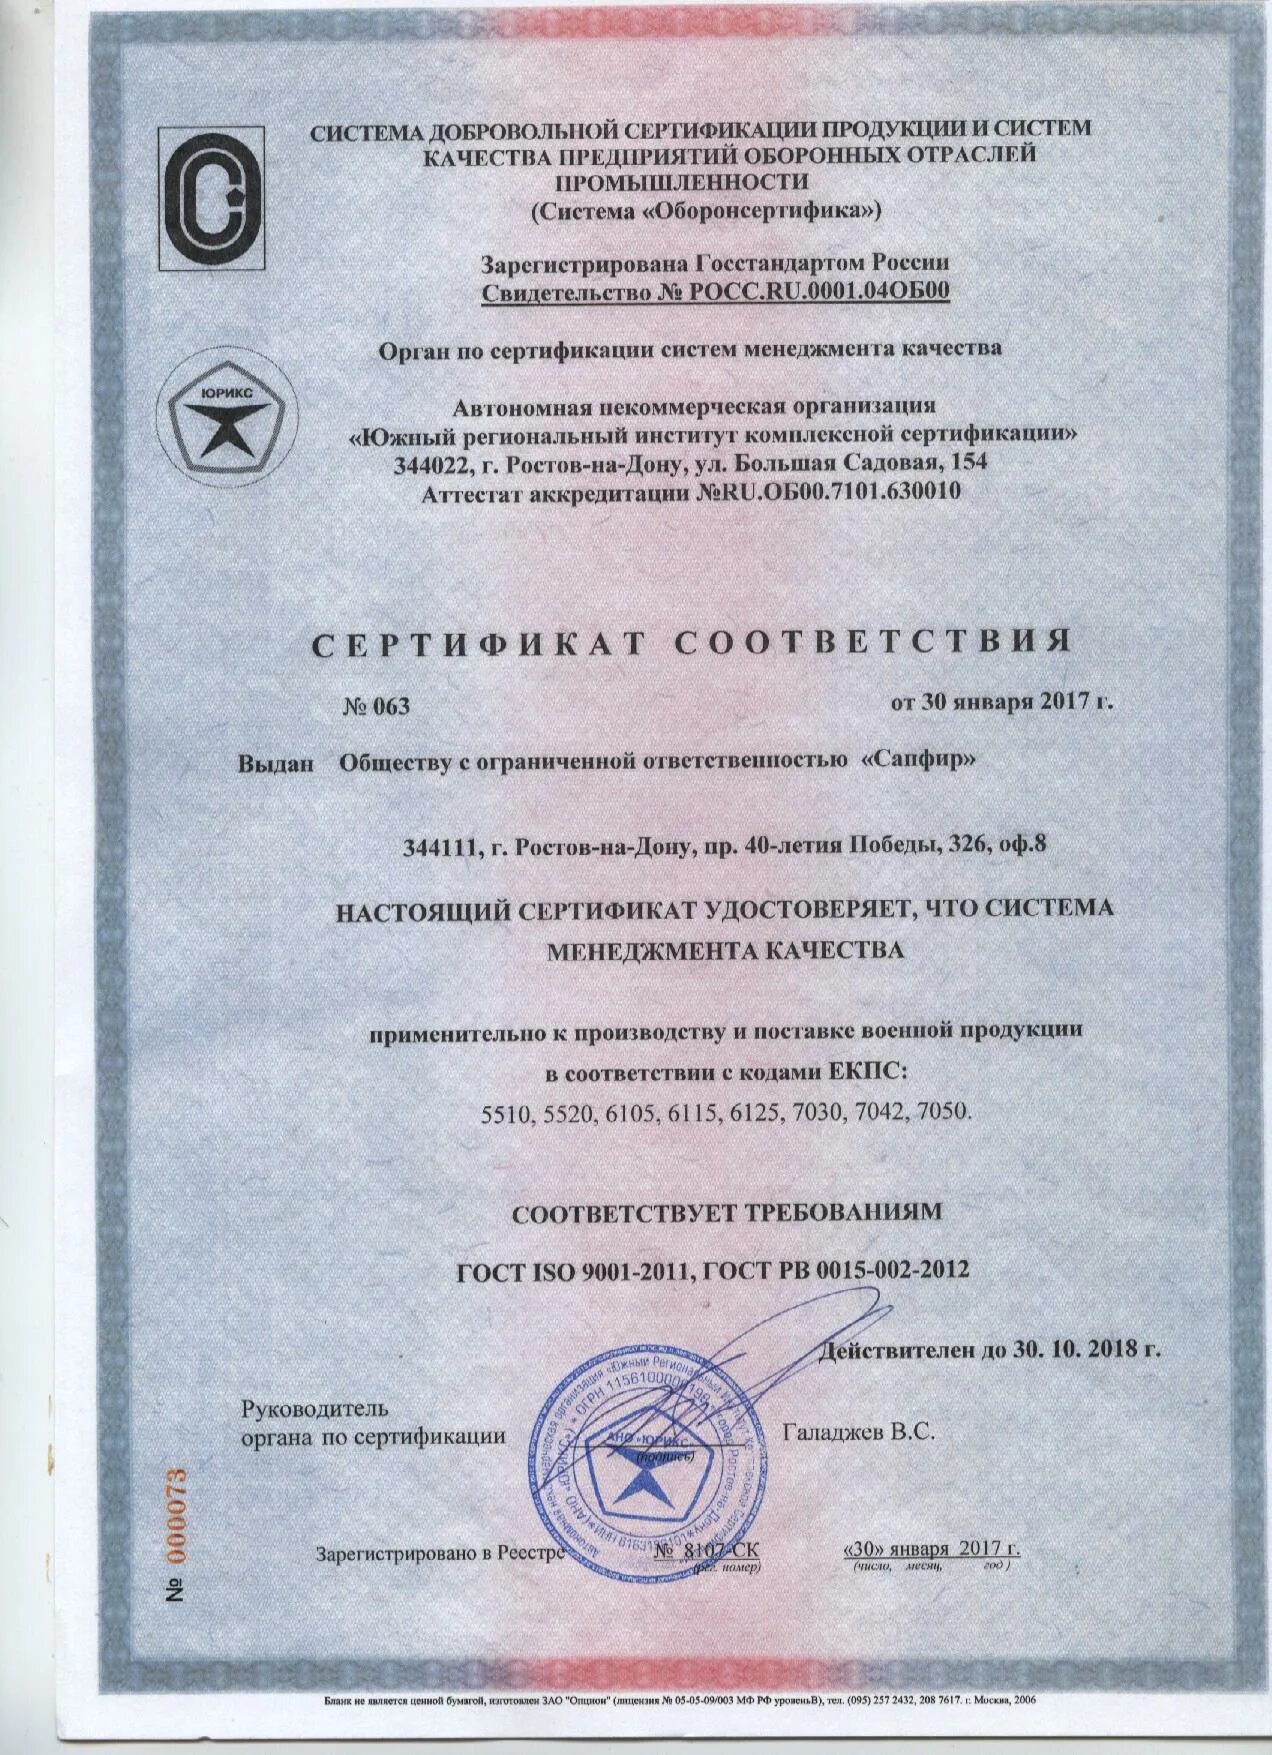 Сертификат смк это. Сертификат ГОСТ РВ 0015-002-2020. Сертификат соответствия ГОСТ РВ 0015-002-2020. СМК сертификат соответствия РВ 0015. Сертификация СМК ГОСТ РВ 0015-002-2020.